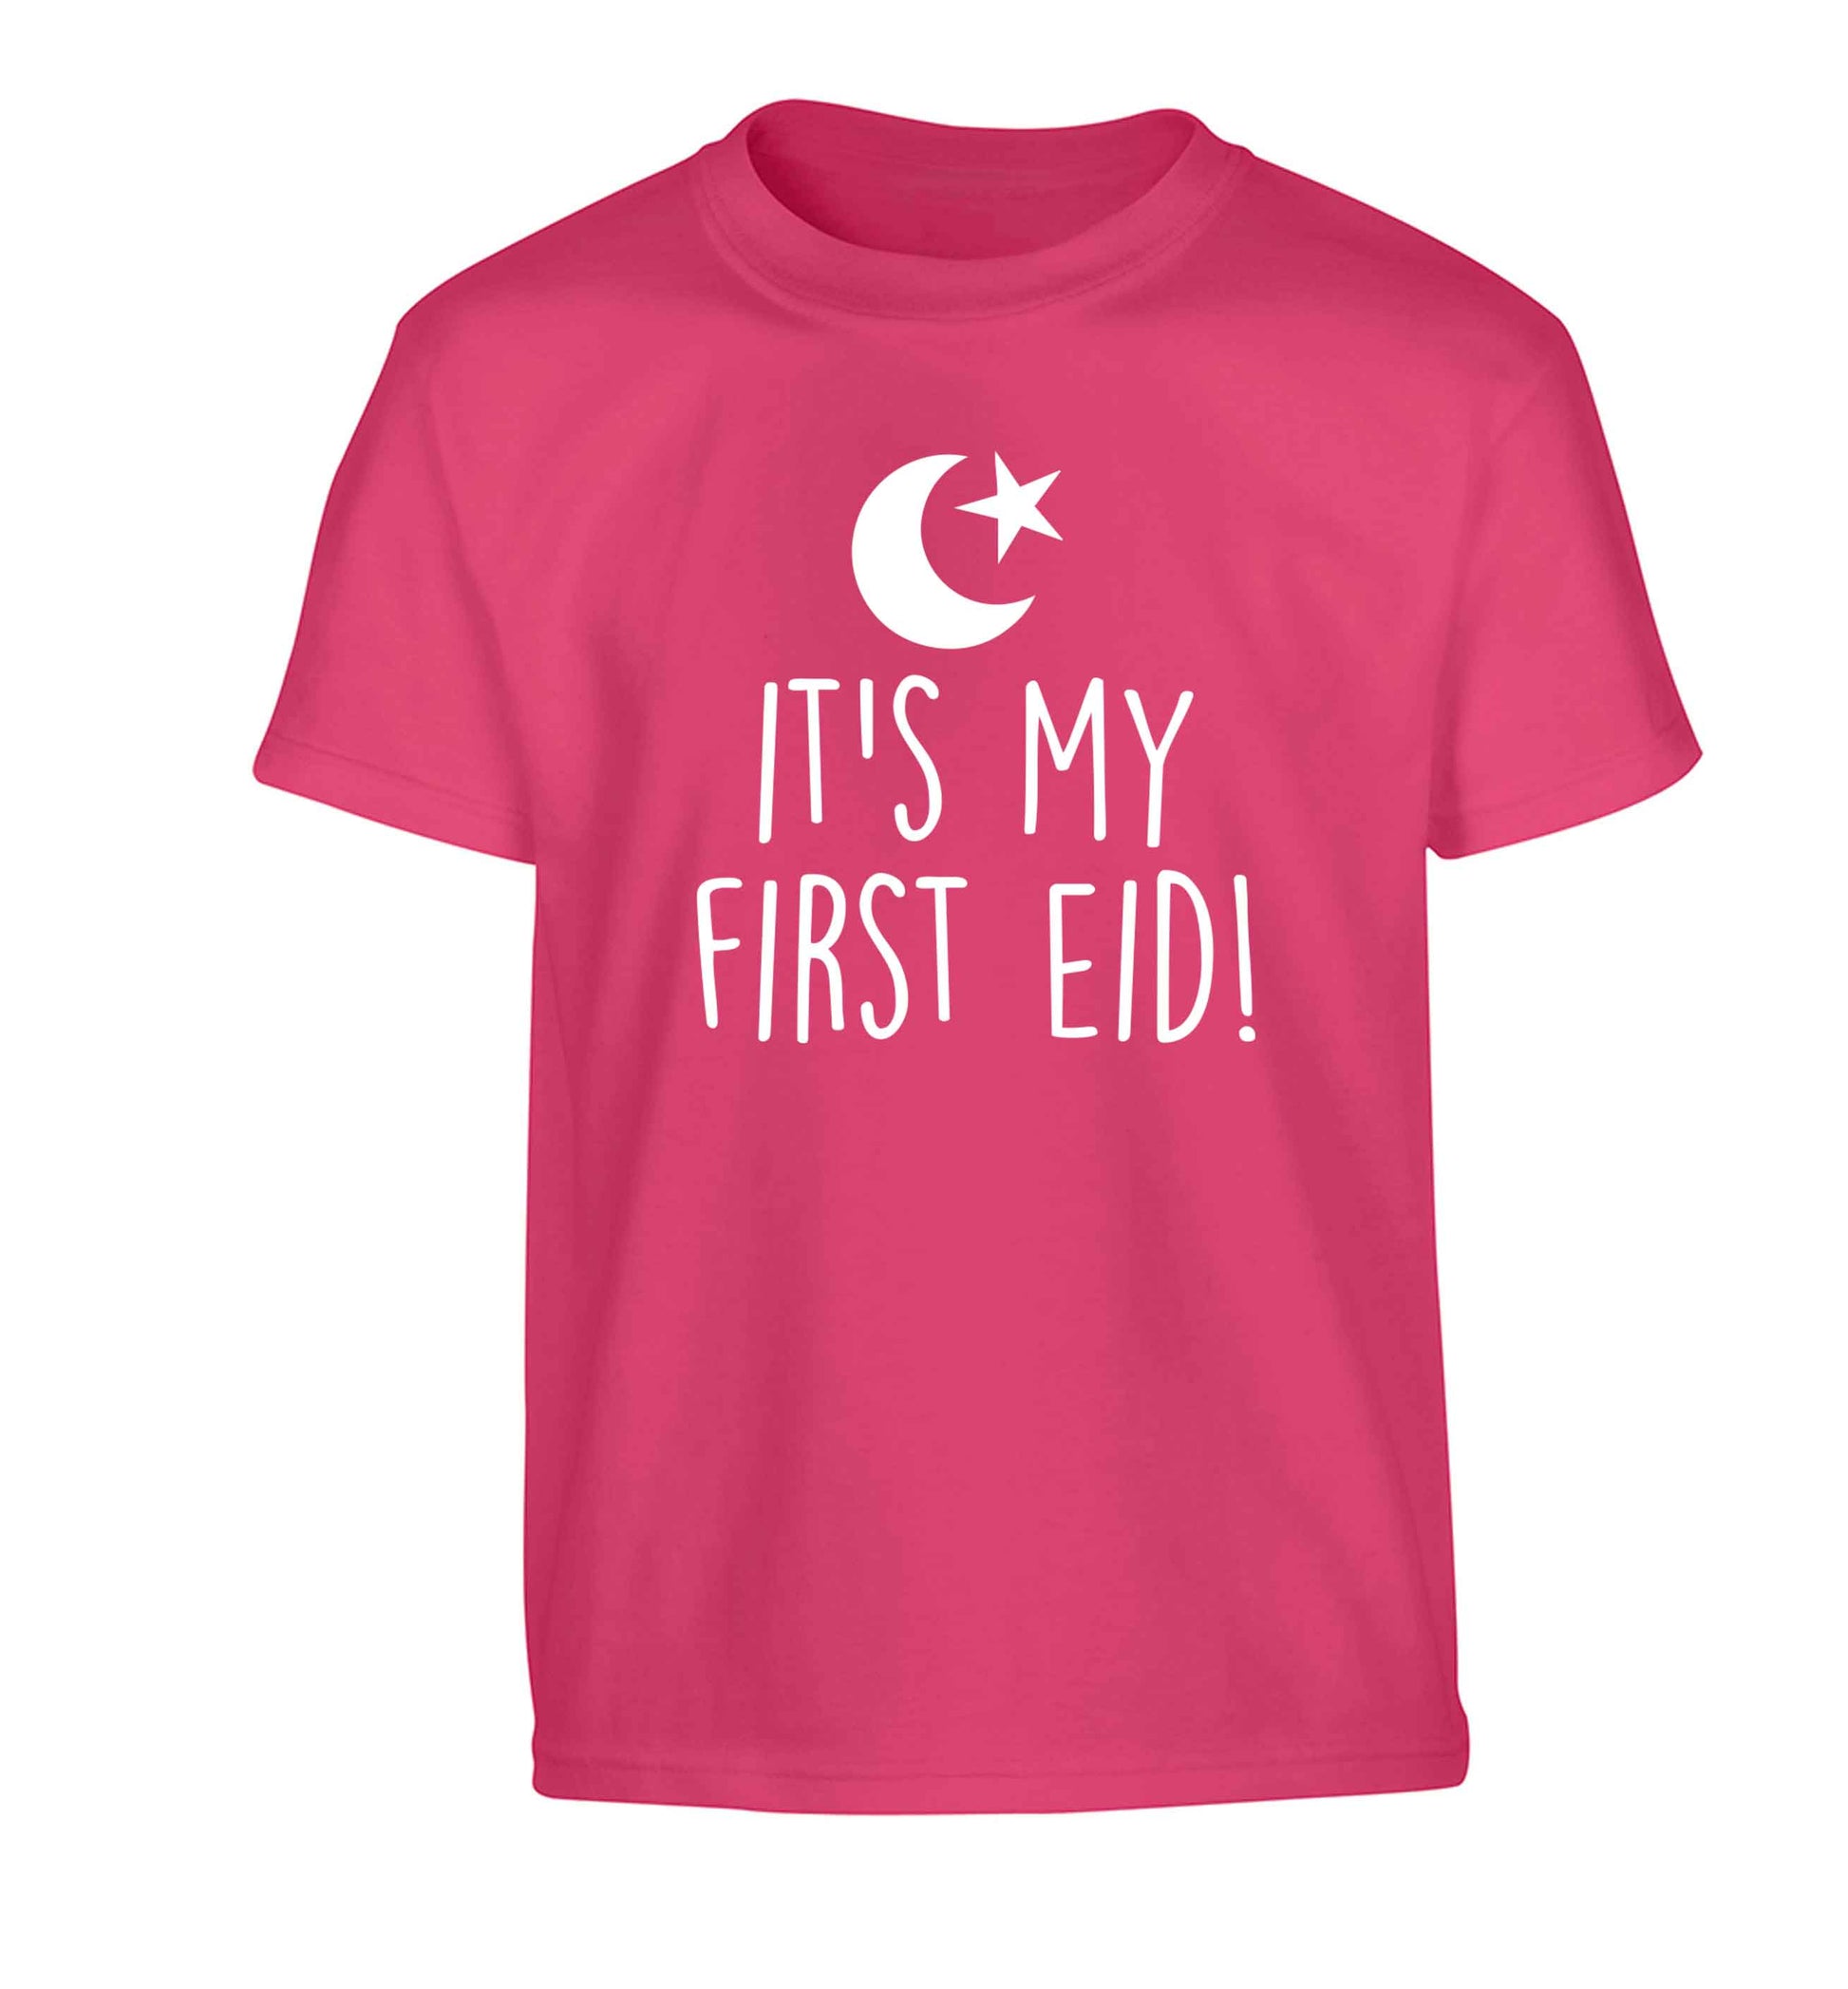 It's my first Eid Children's pink Tshirt 12-13 Years